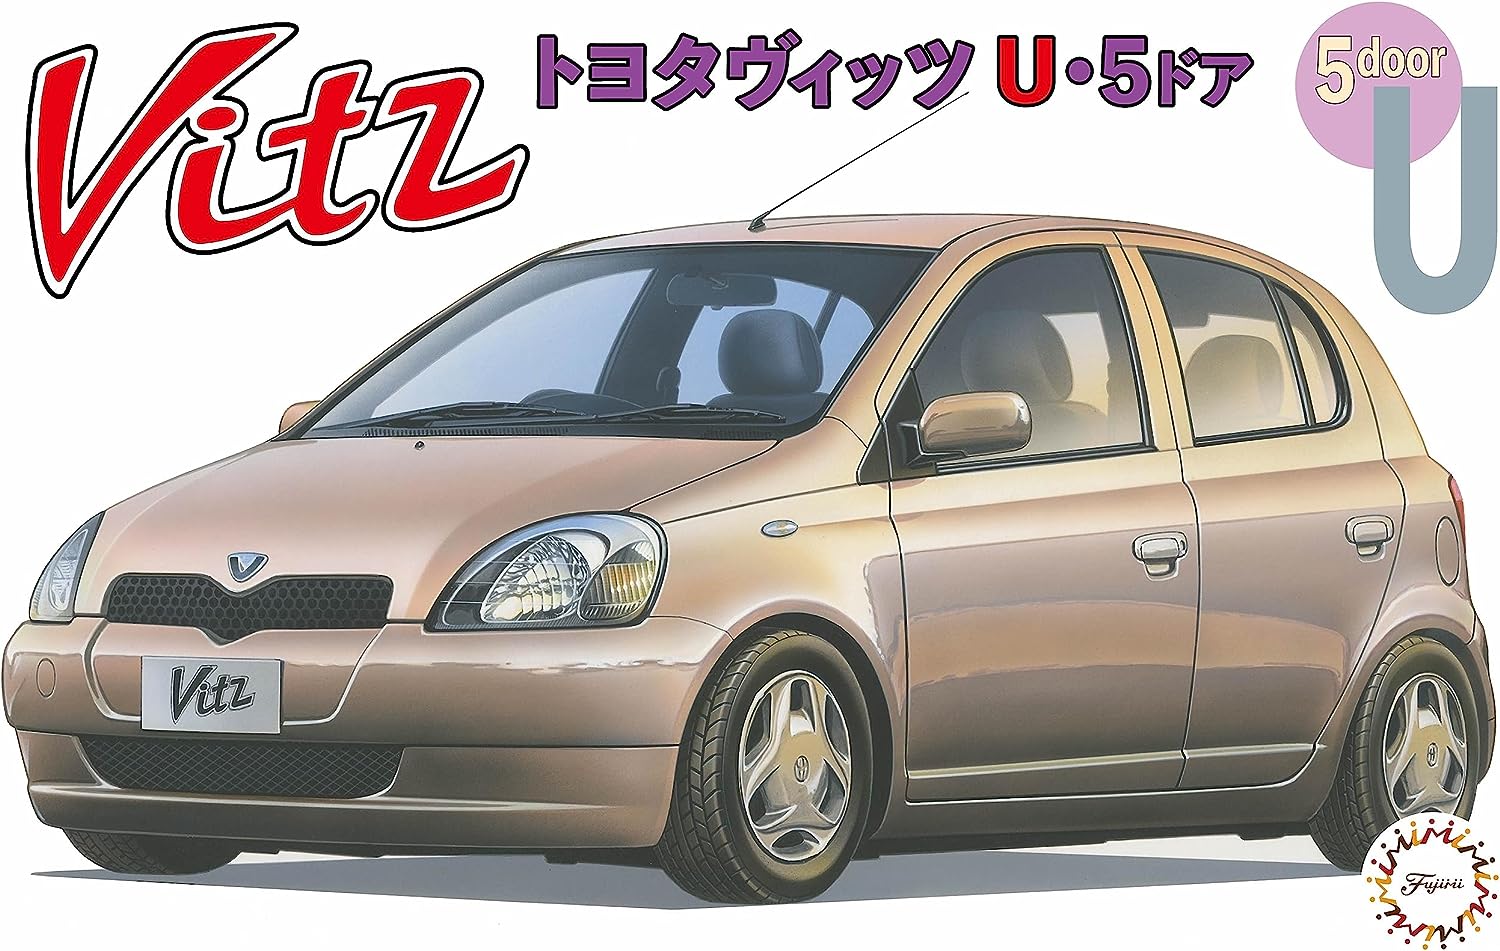 1/24 Inch Up Series No.23 Toyota Vitz U Type 5 Door